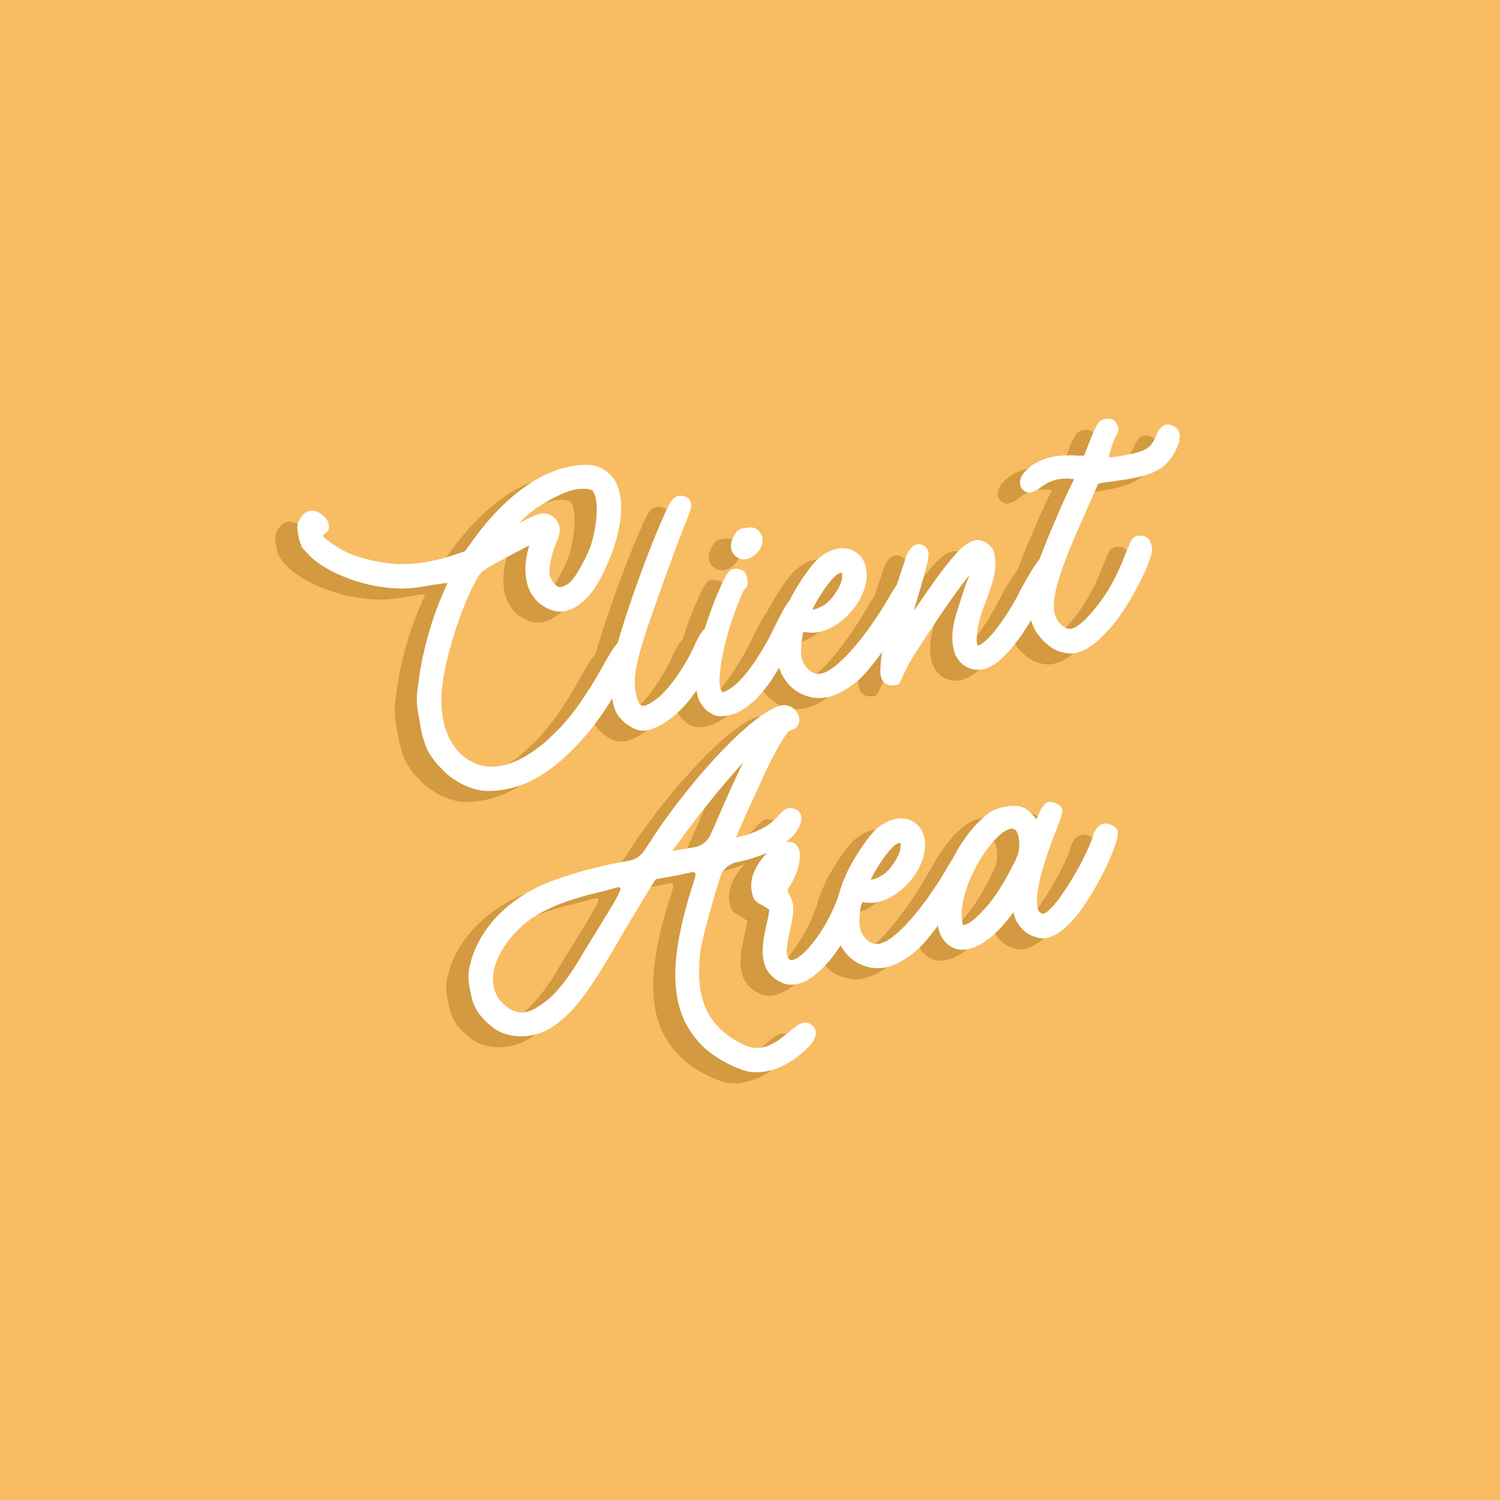 Client Area